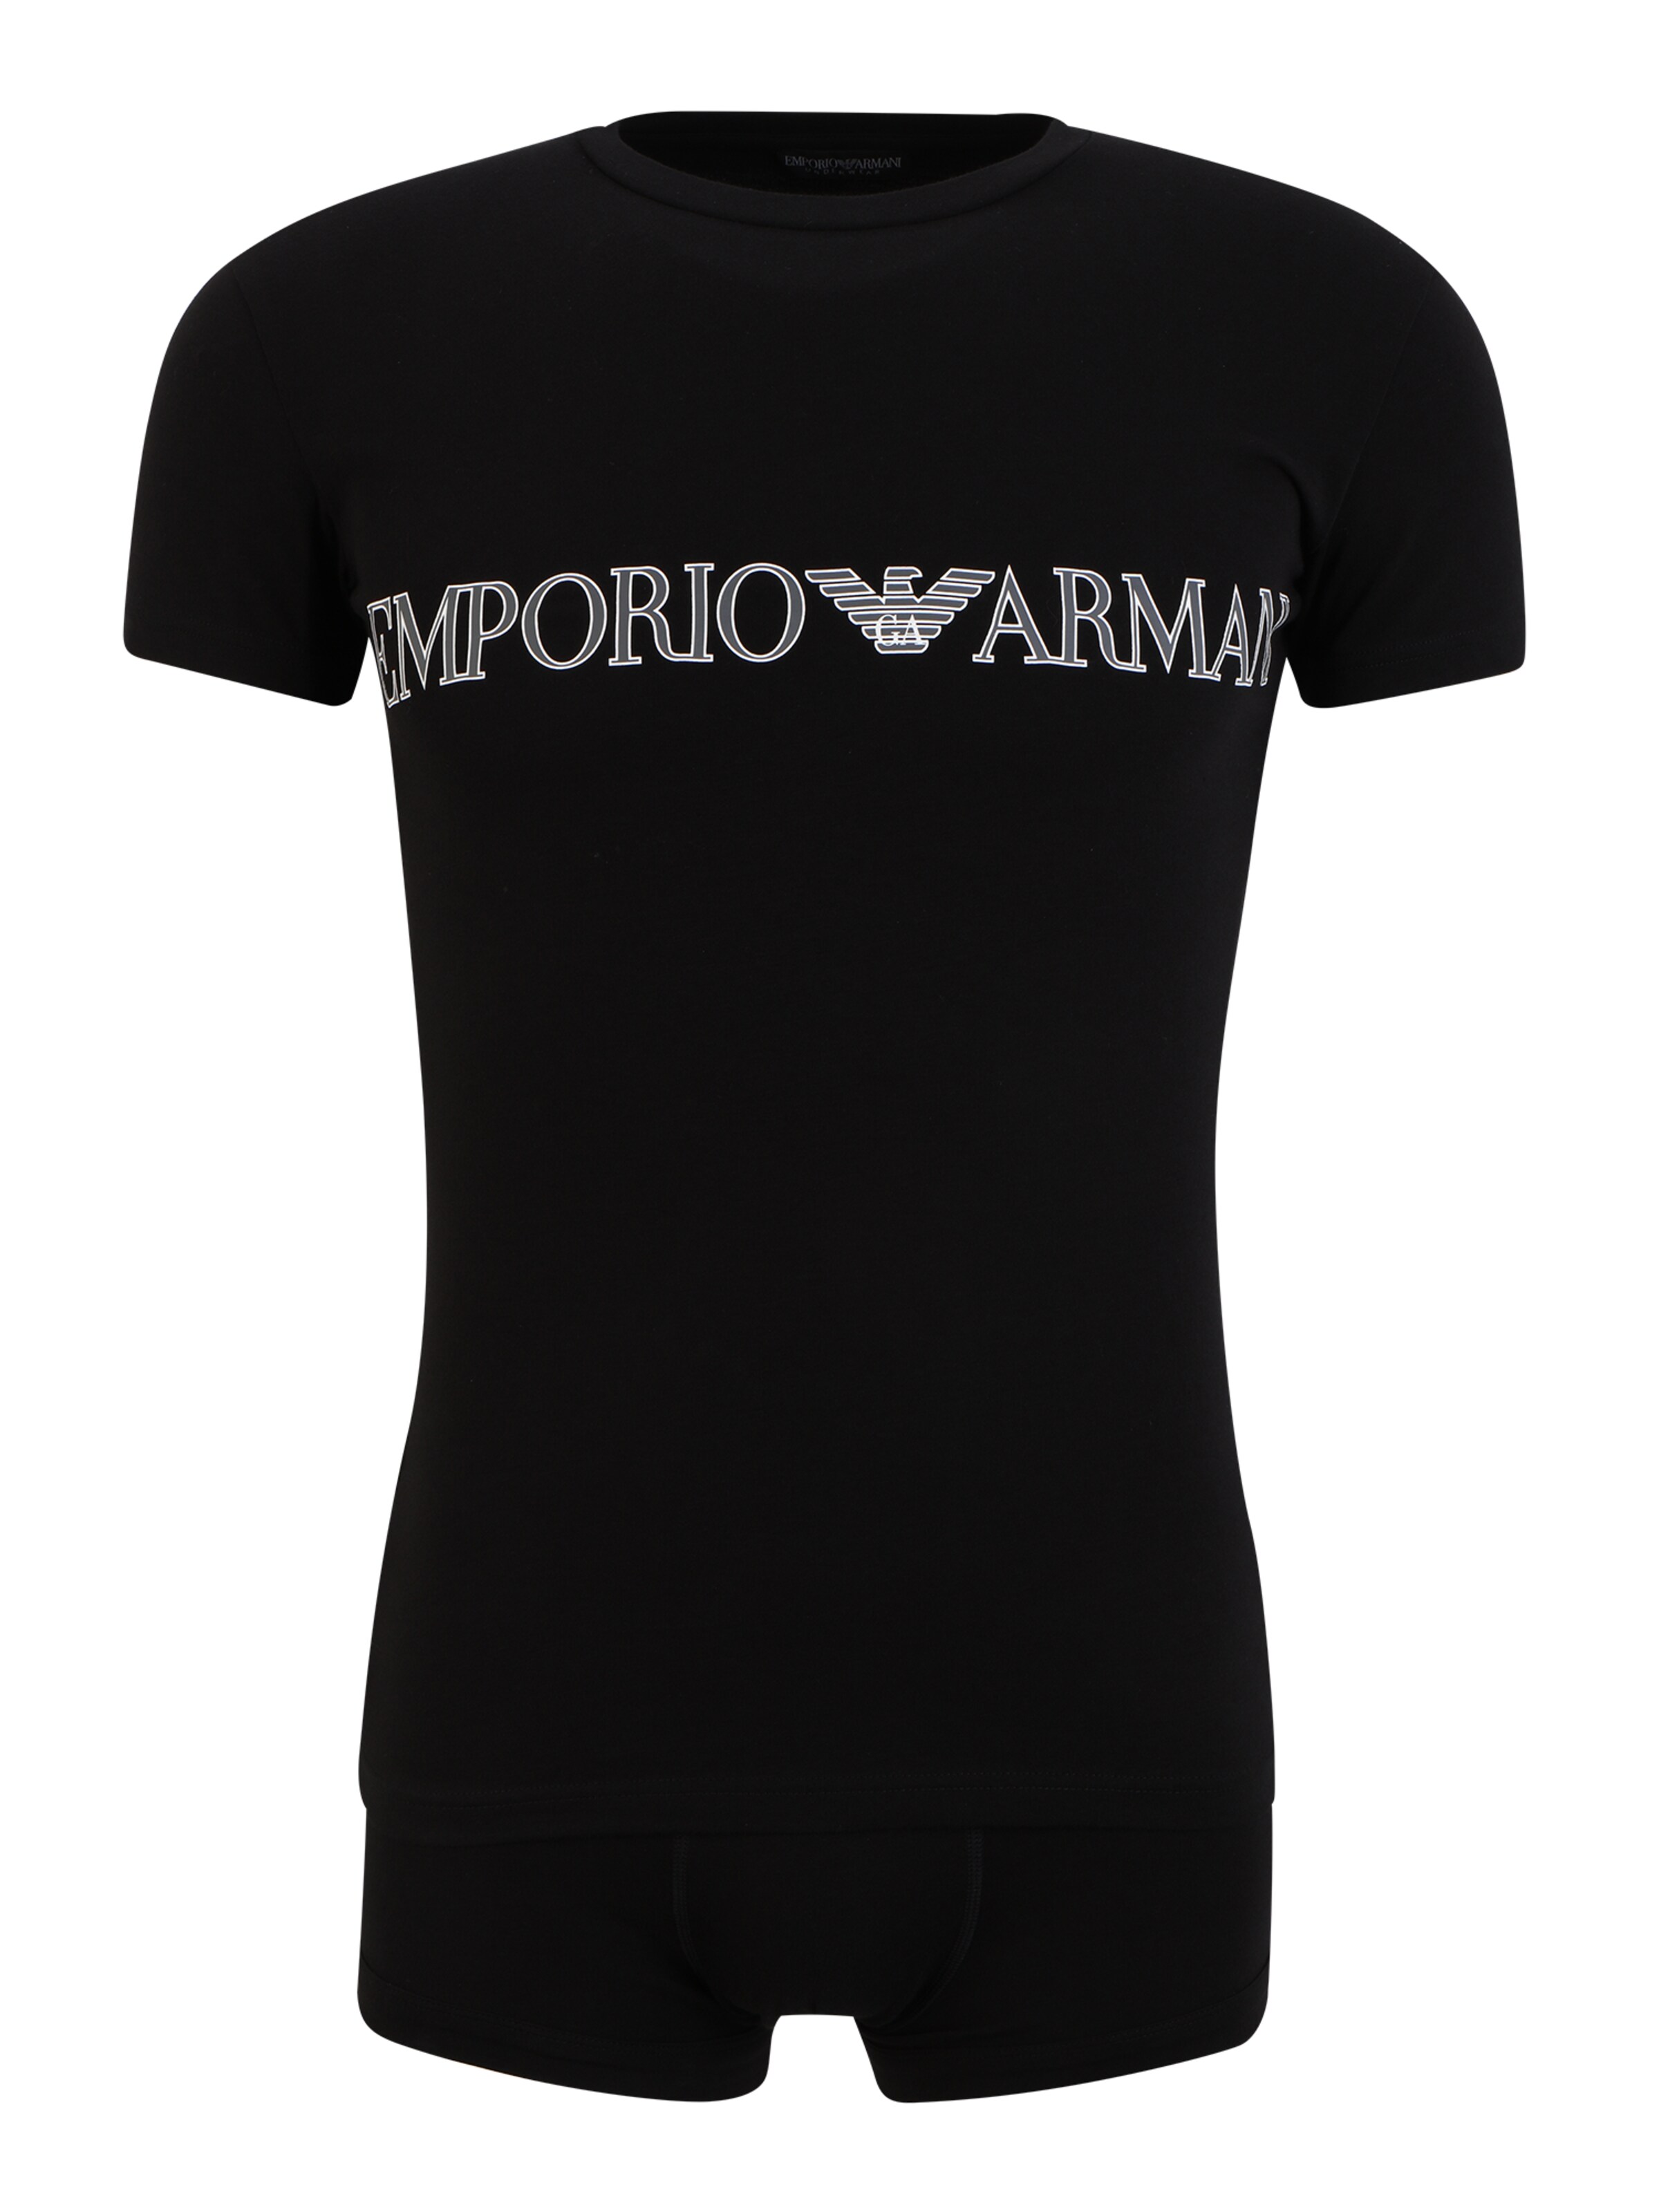 Männer Wäsche Emporio Armani T-Shirt + Trunk in Schwarz - VG31852